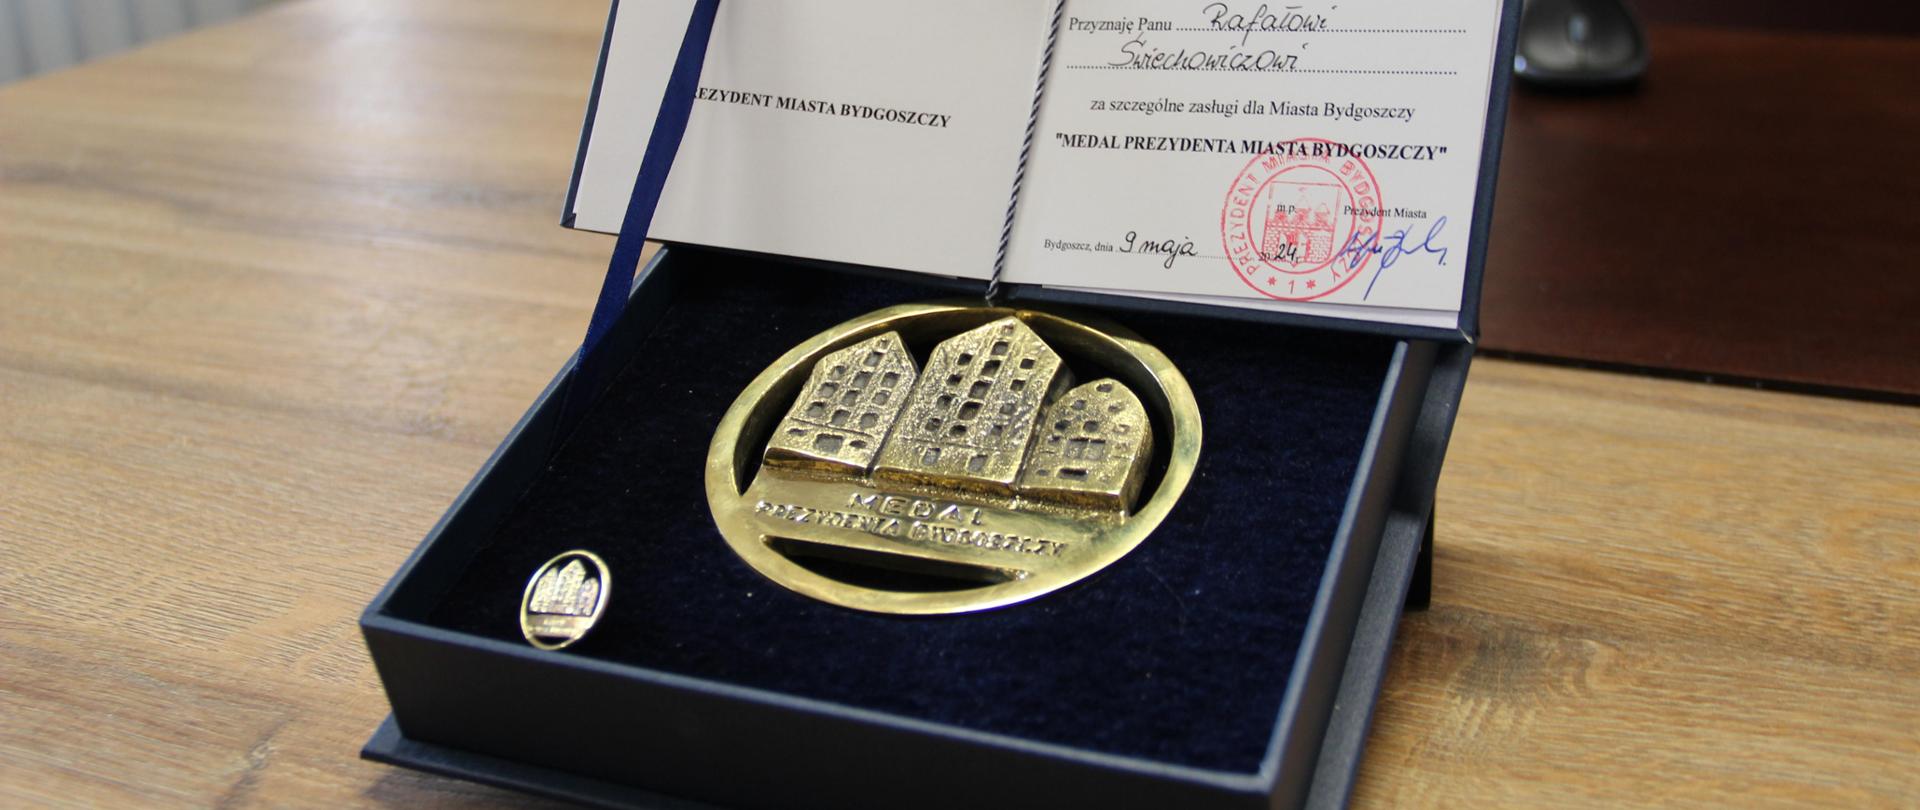 Medal Prezydenta Bydgoszczy - w granatowym etui. Leży na stole.